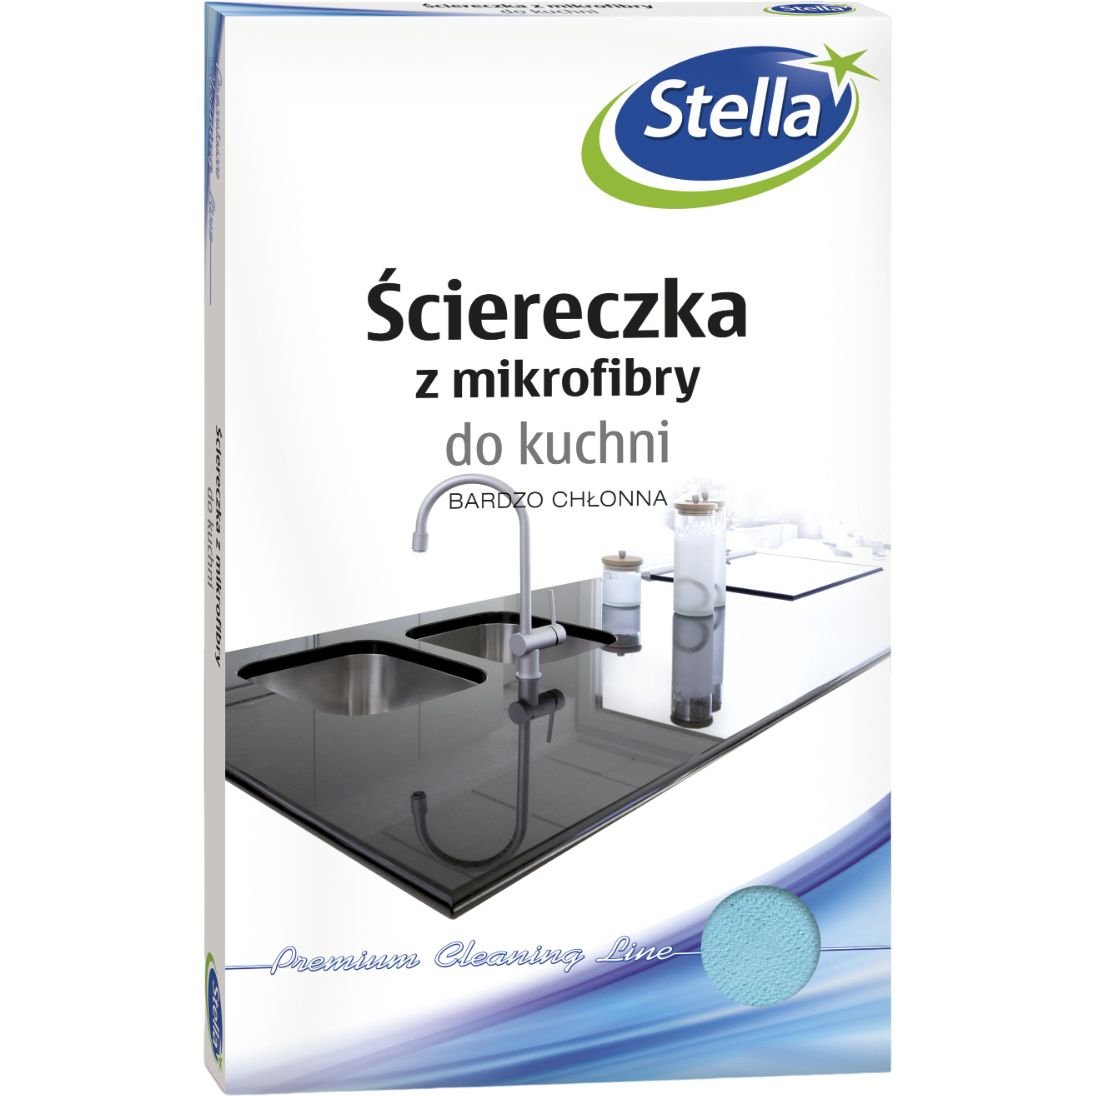 Серветка Stella мікрофібра для кухні - фото 1